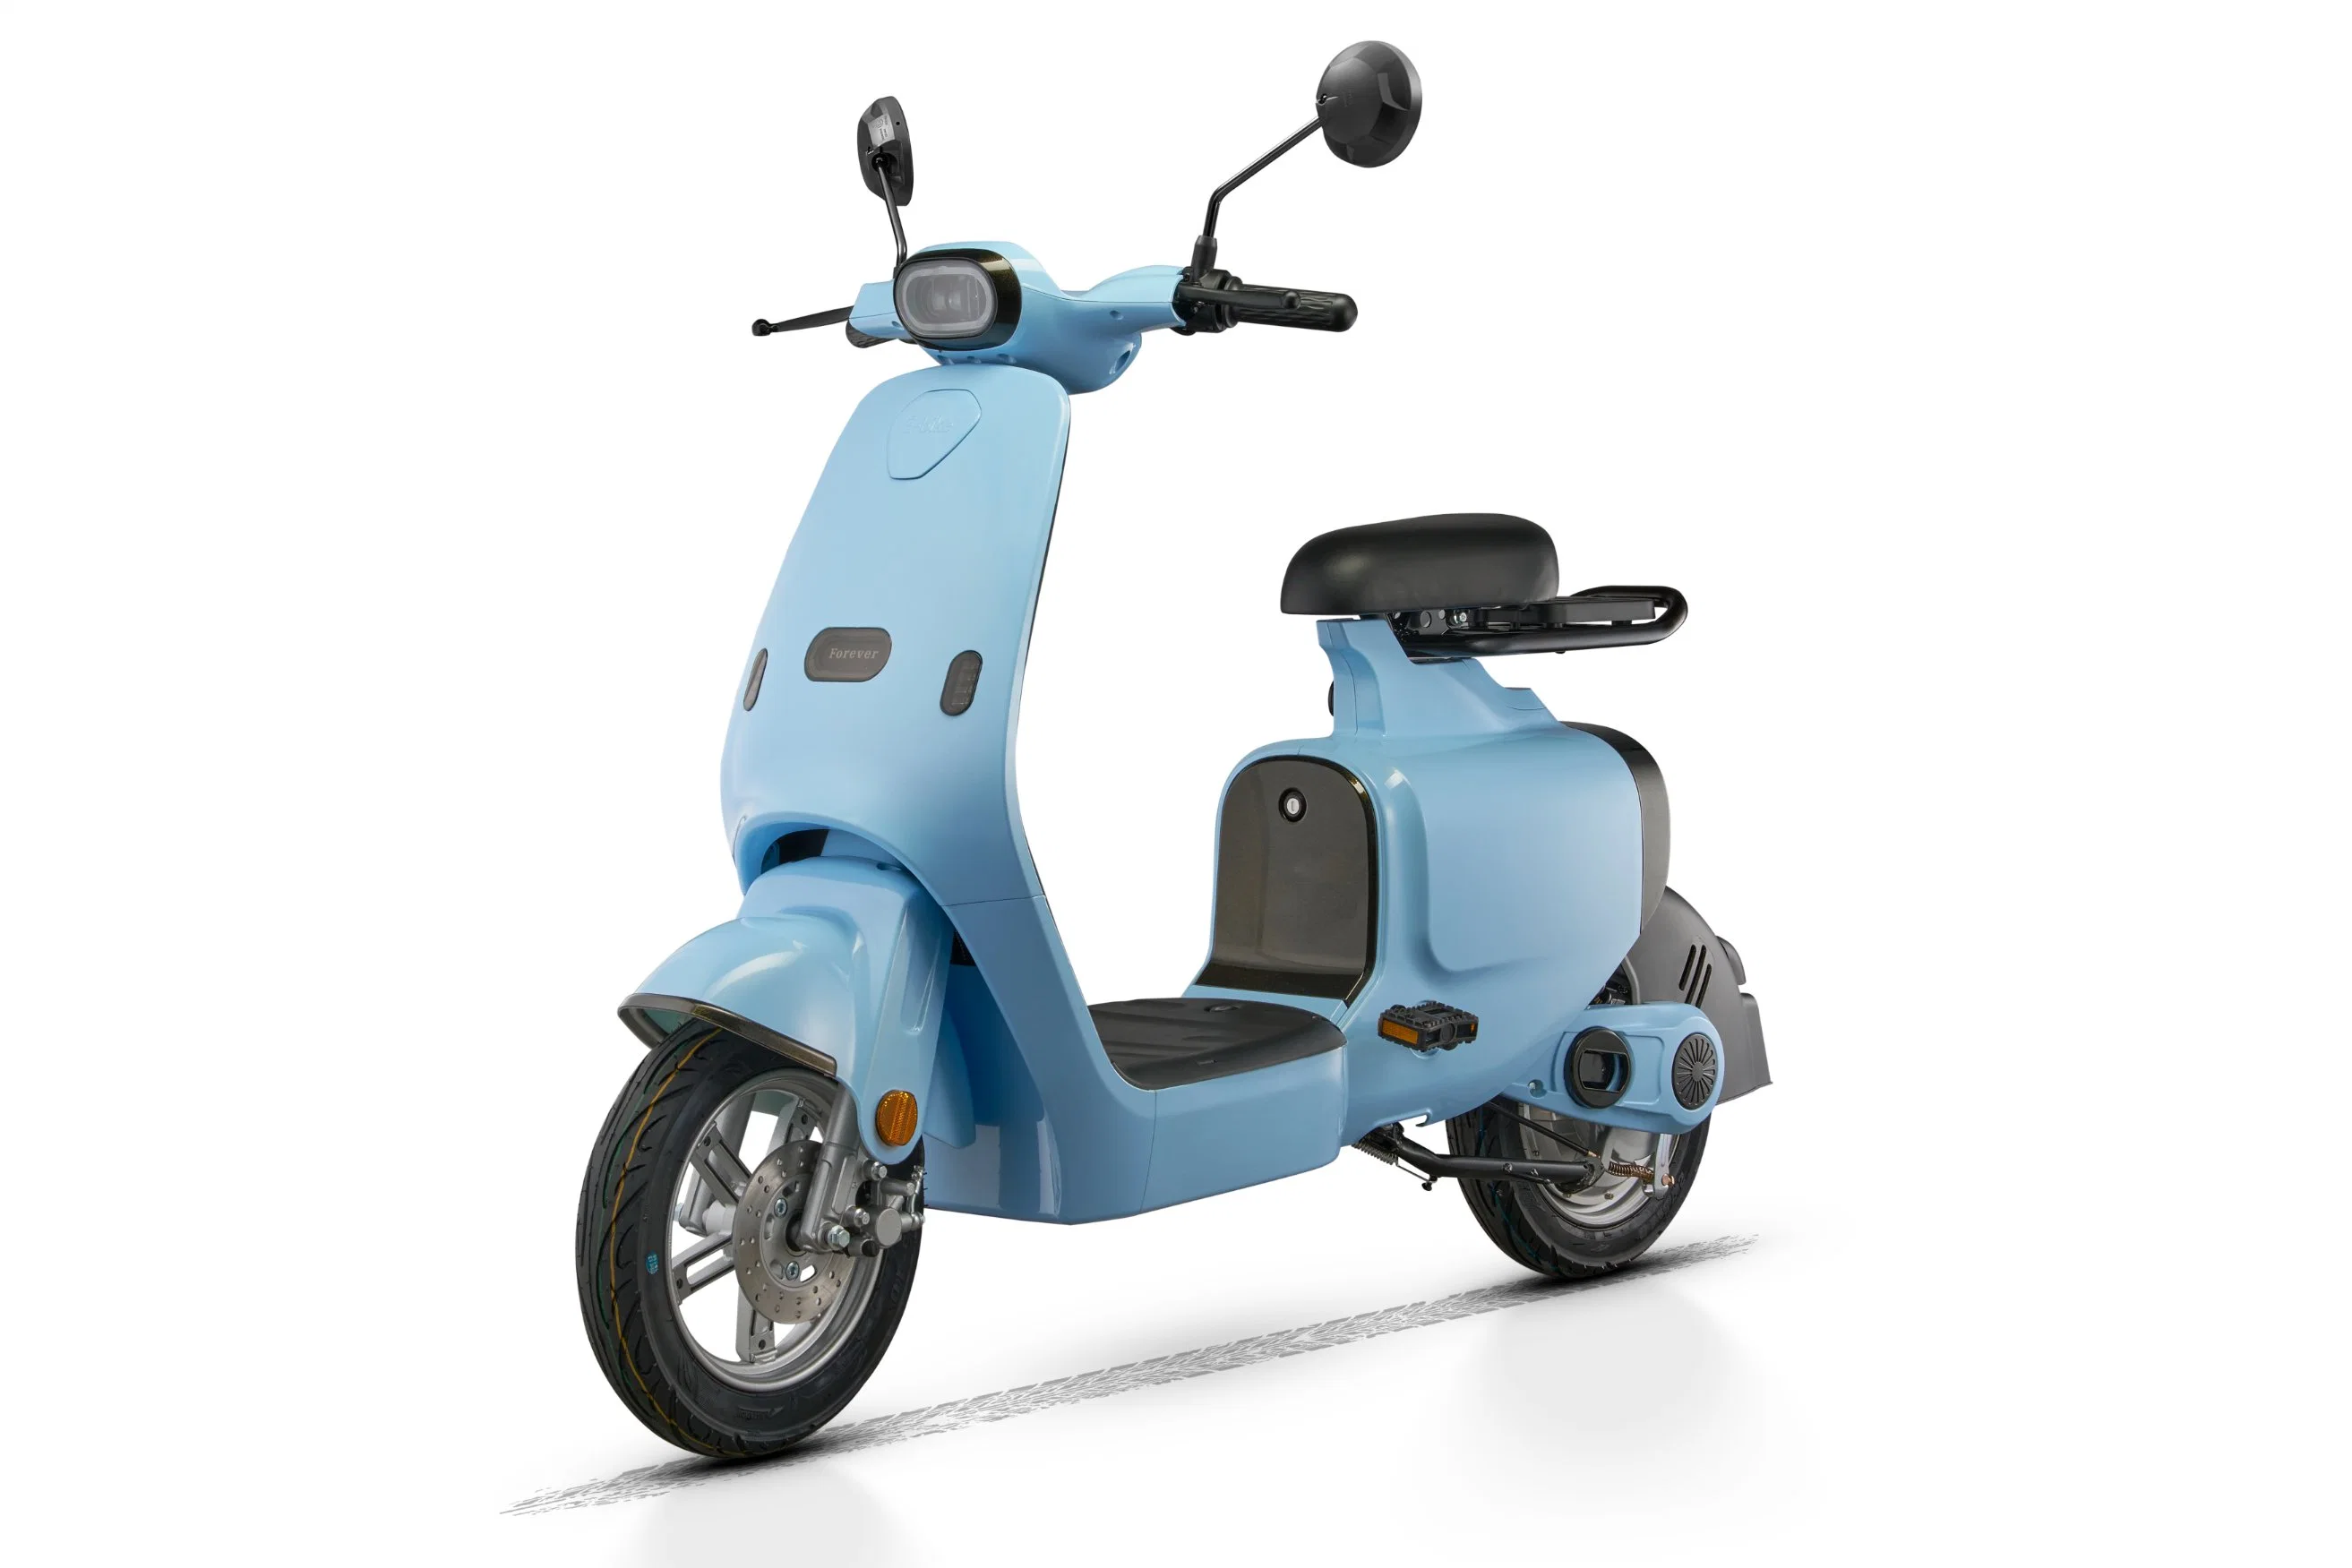 2023 Sud-Est Vente Chaude Nouveau Design Scooter Électrique à Batterie Complète à Faible Vitesse de 500W Unité Complète de Moto Vélo S1